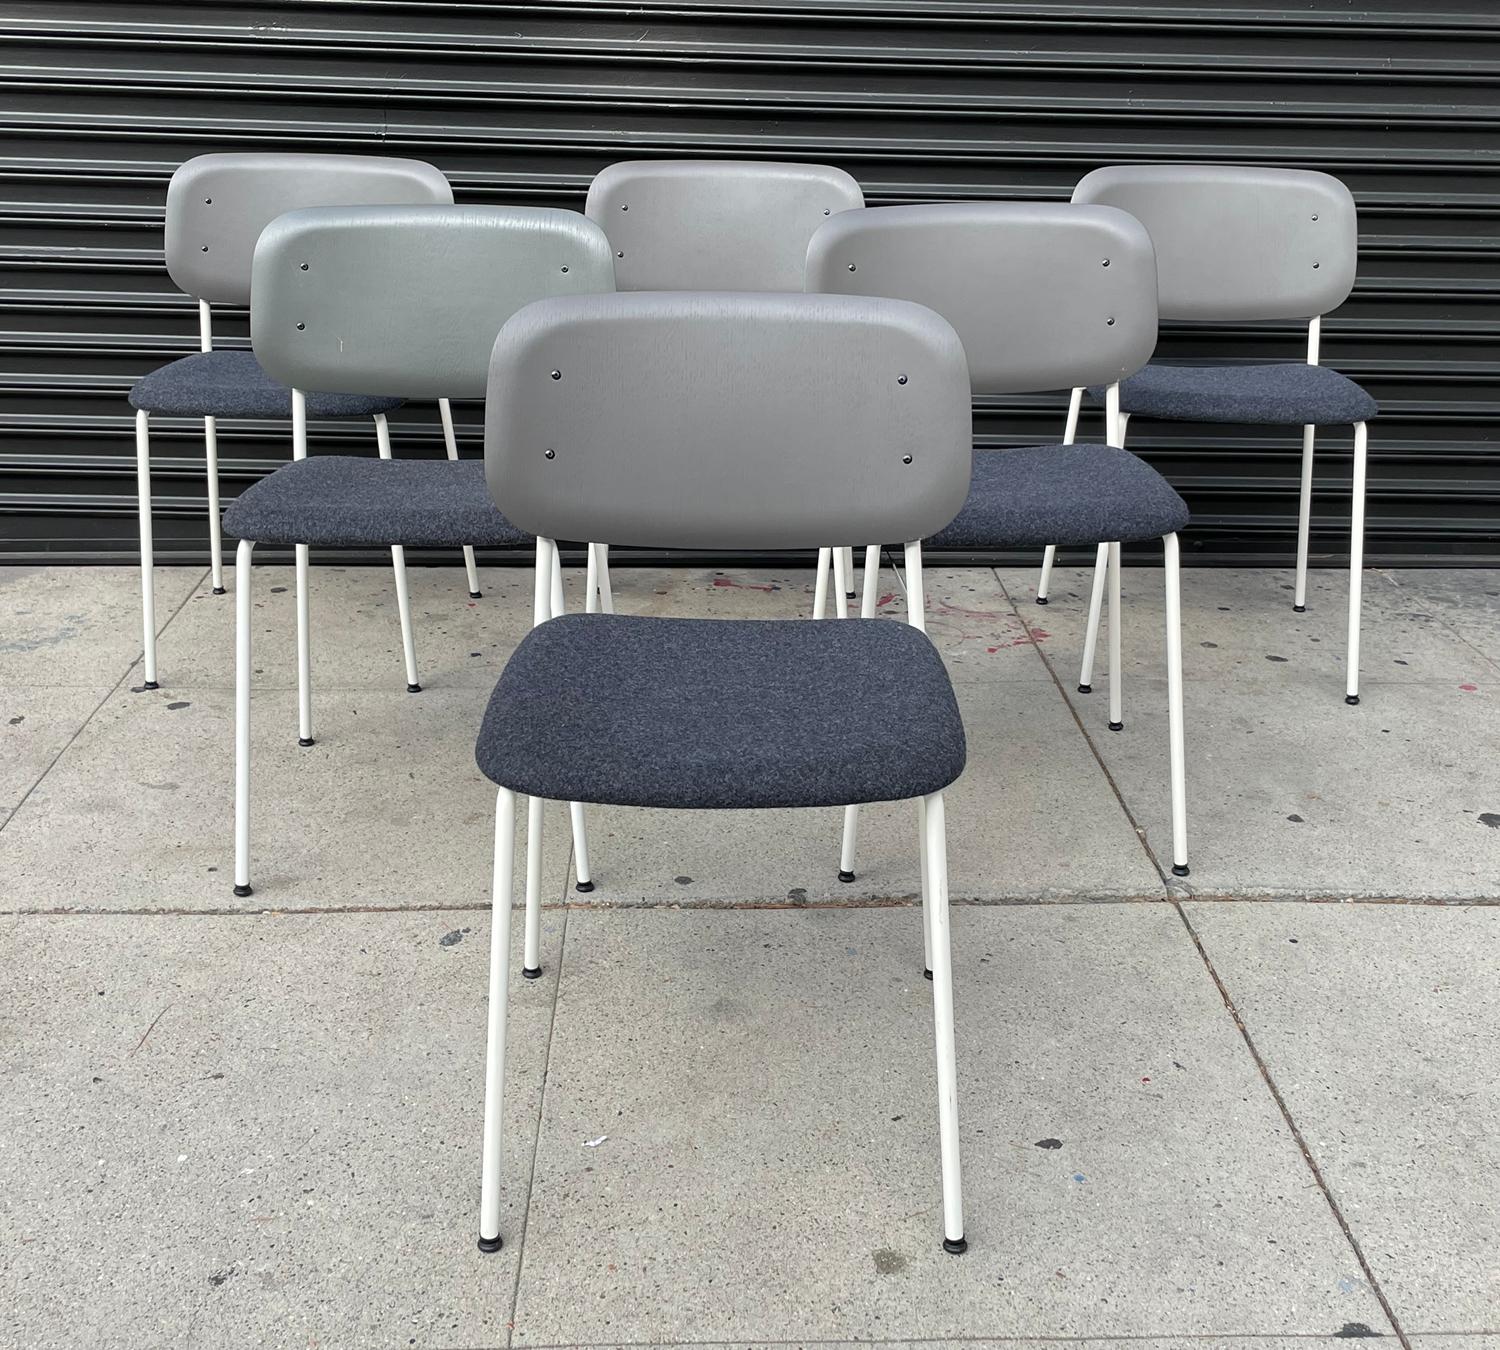 Schöner Satz von 6 Beistell- oder Esszimmerstühlen, entworfen von Iskos-Berlin für Hay furniture.
Die Stühle sind stapelbar, was perfekt für kleine Räume ist.

Sitz und Rückenlehne aus Formsperrholz; Beine aus Stahlrohr; Sitzpolsterung aus Stoff;